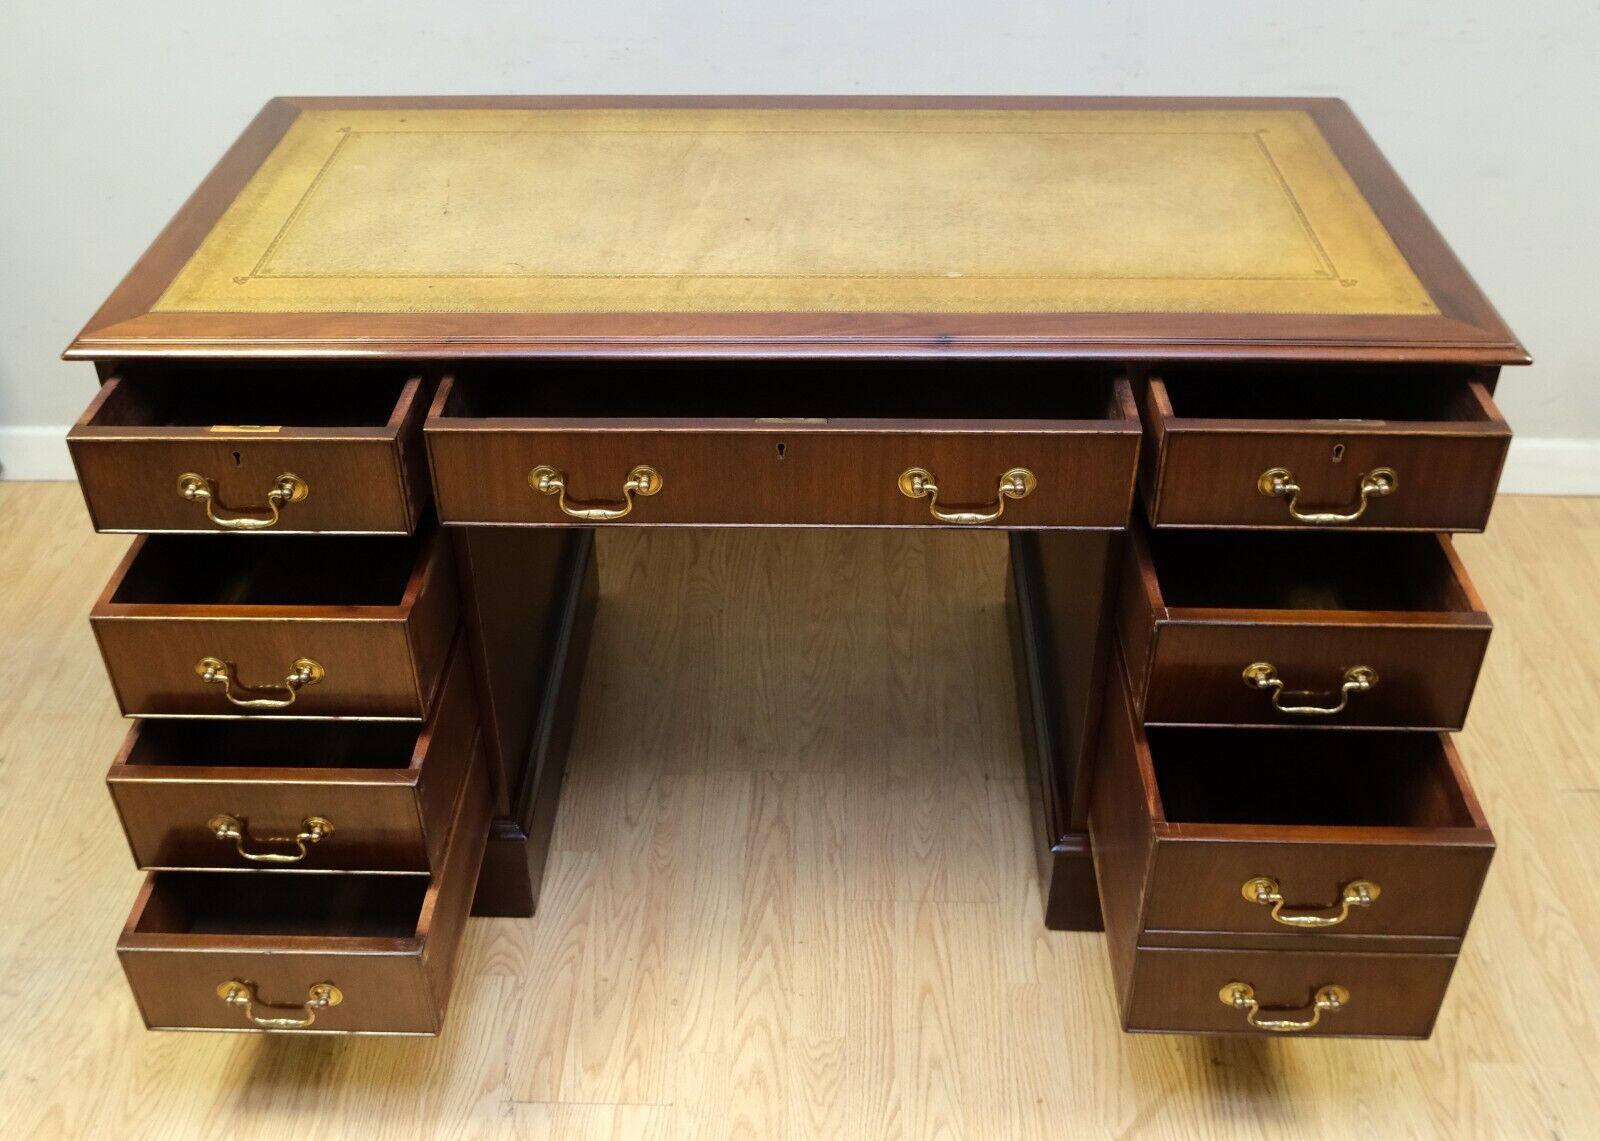 English Elegant Hardwood Desk with Light Brown Leather Desk Top & Gold Leaf Tooling